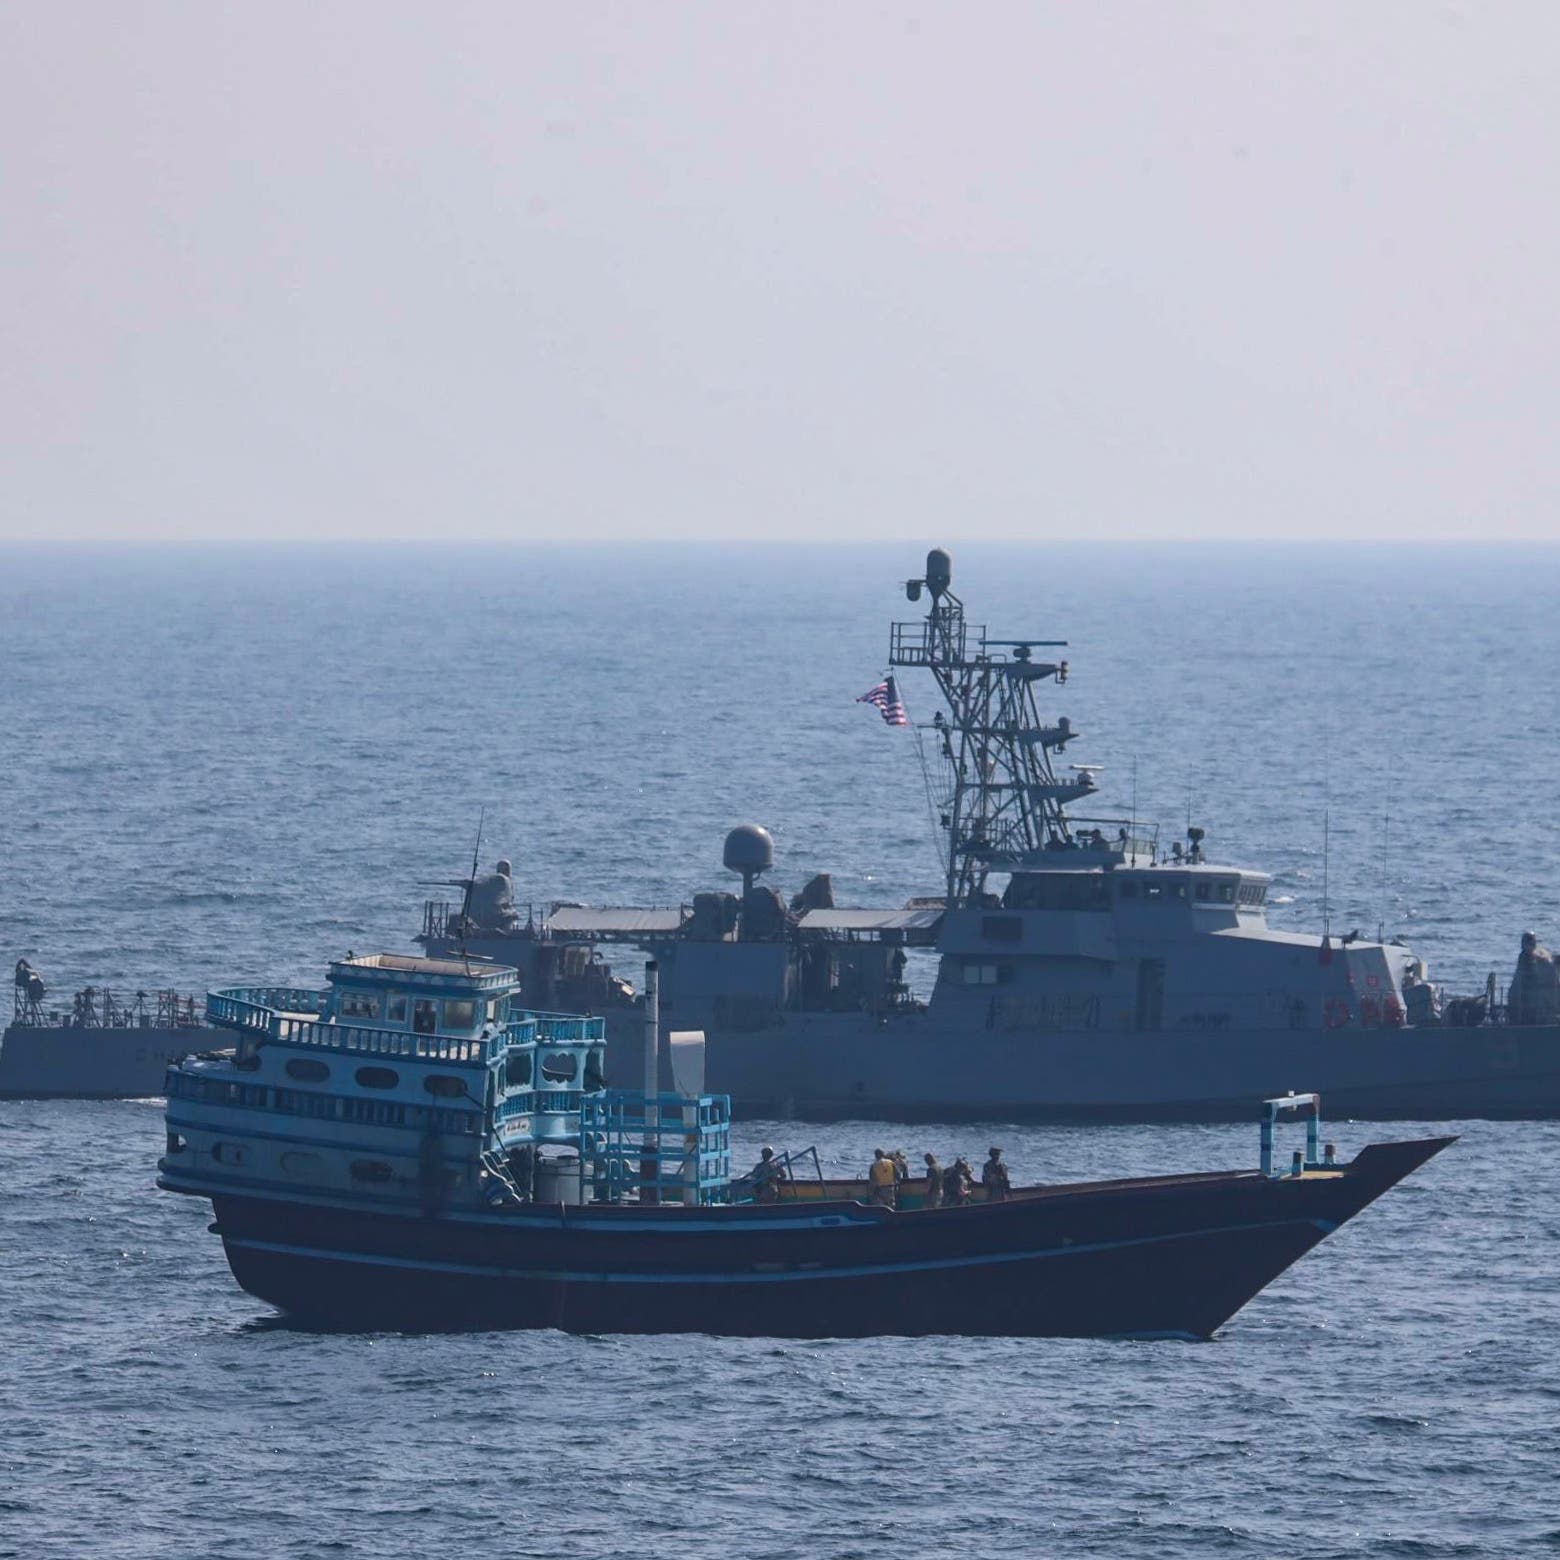 البحرية الأميركية تصادر شحنة إيرانية لمواد تستخدم بالمتفجرات في طريقها للحوثيين